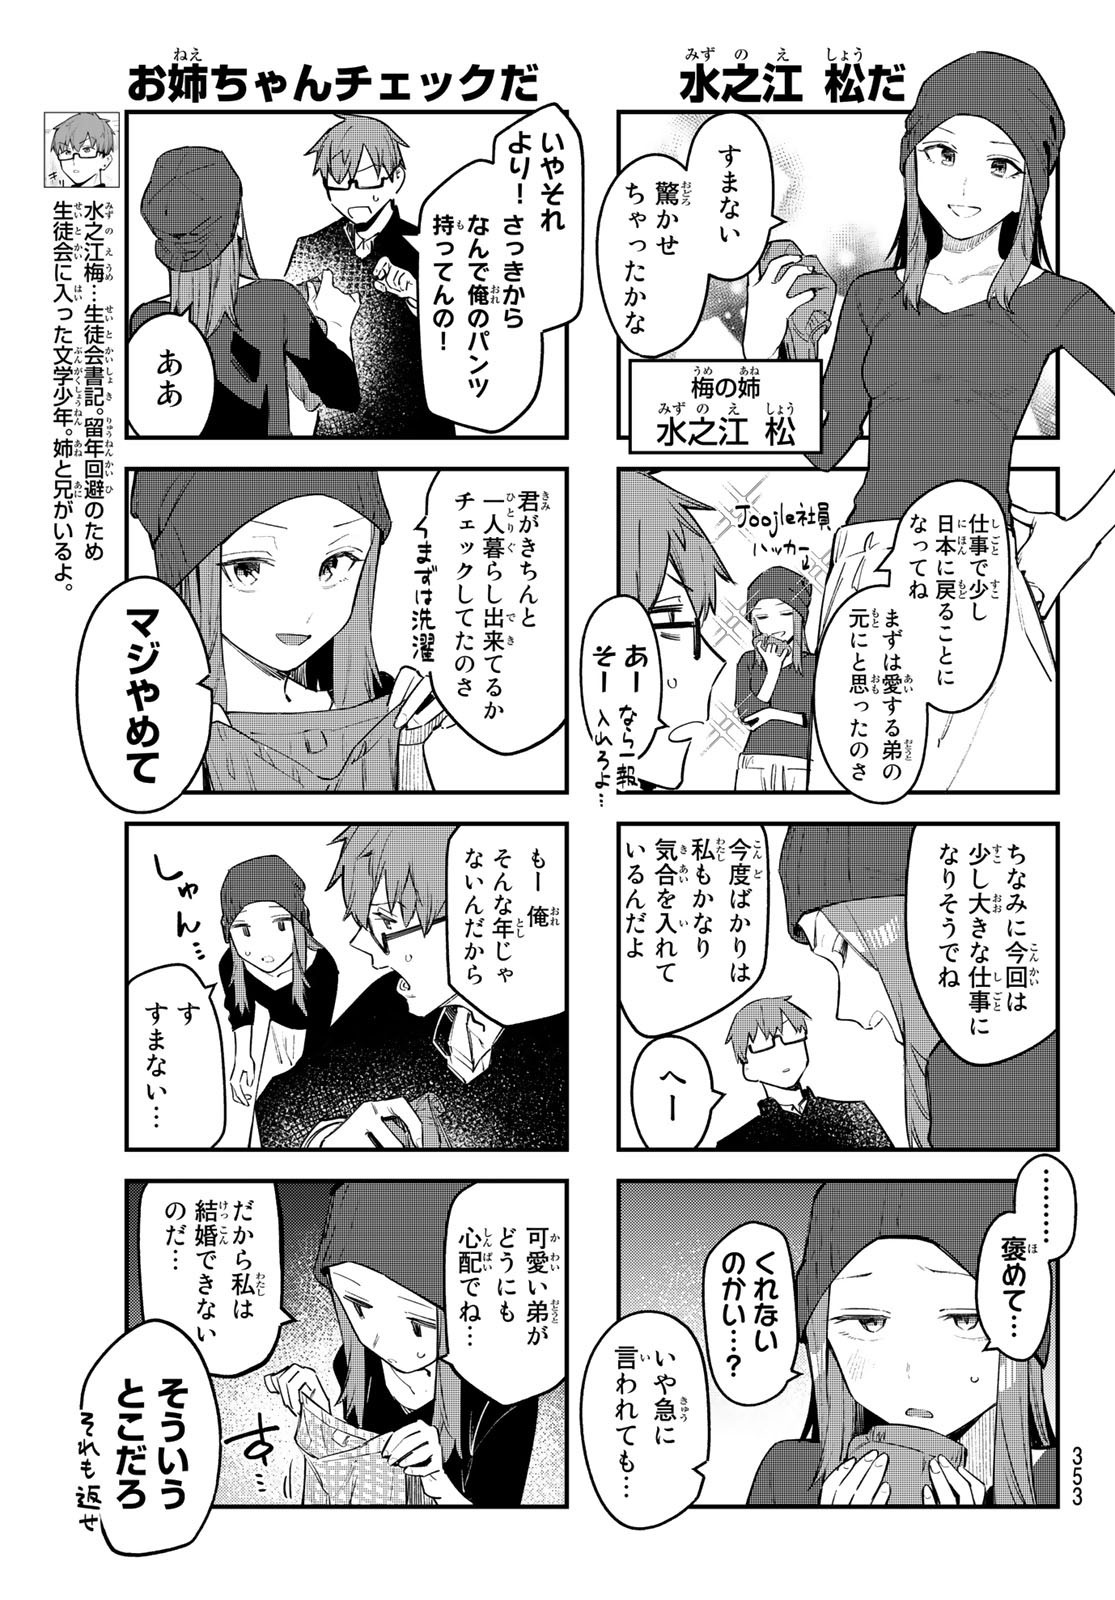 Seitokai ni mo Ana wa Aru! - Chapter 013 - Page 3